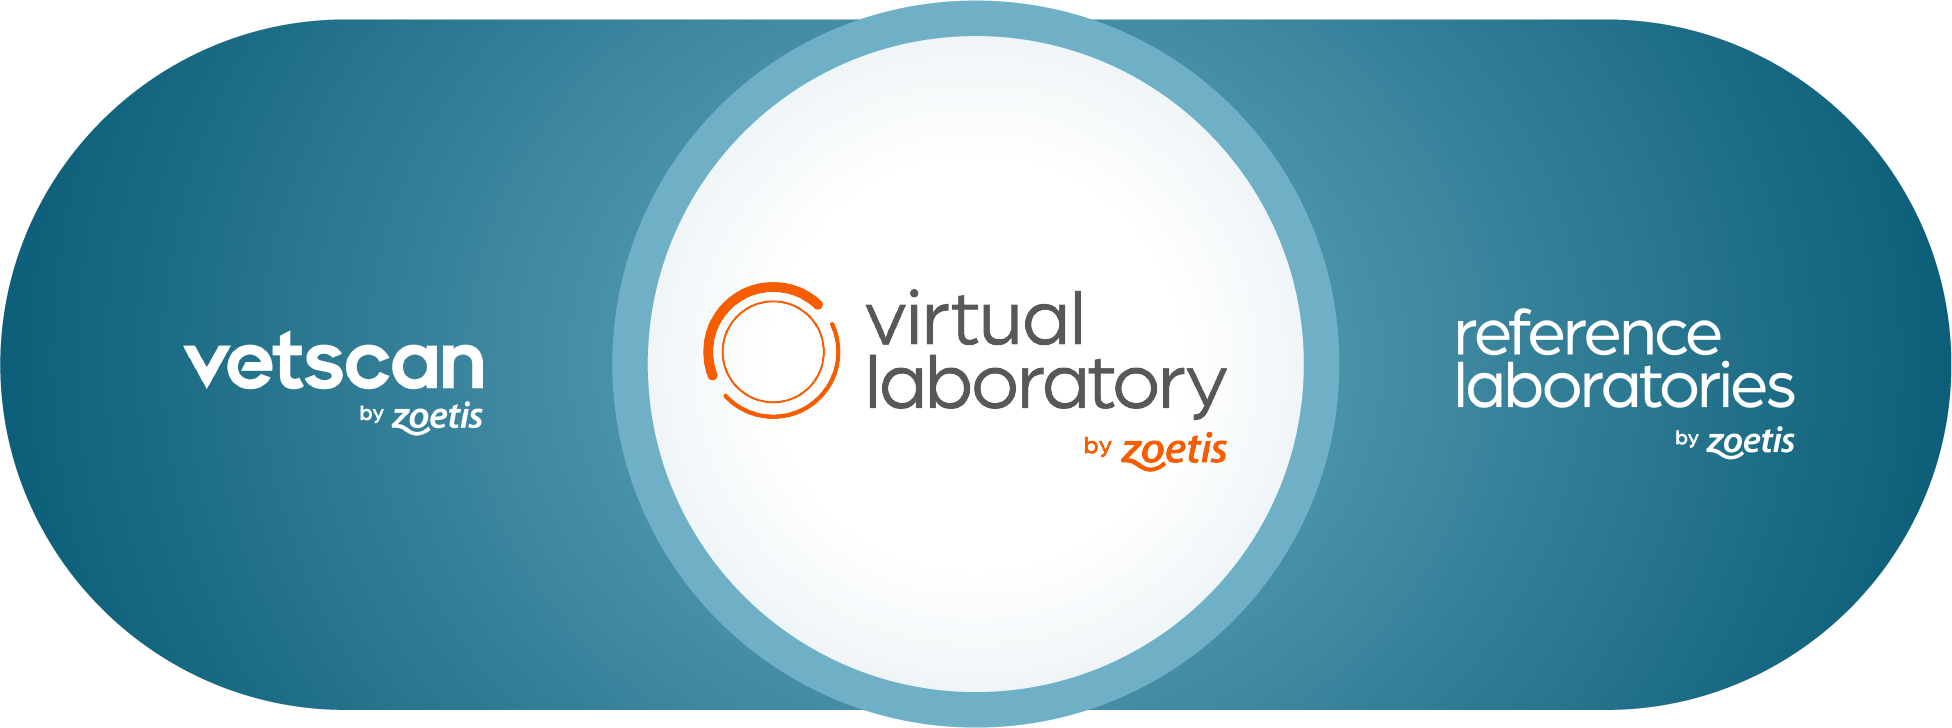 virtual-lab-full